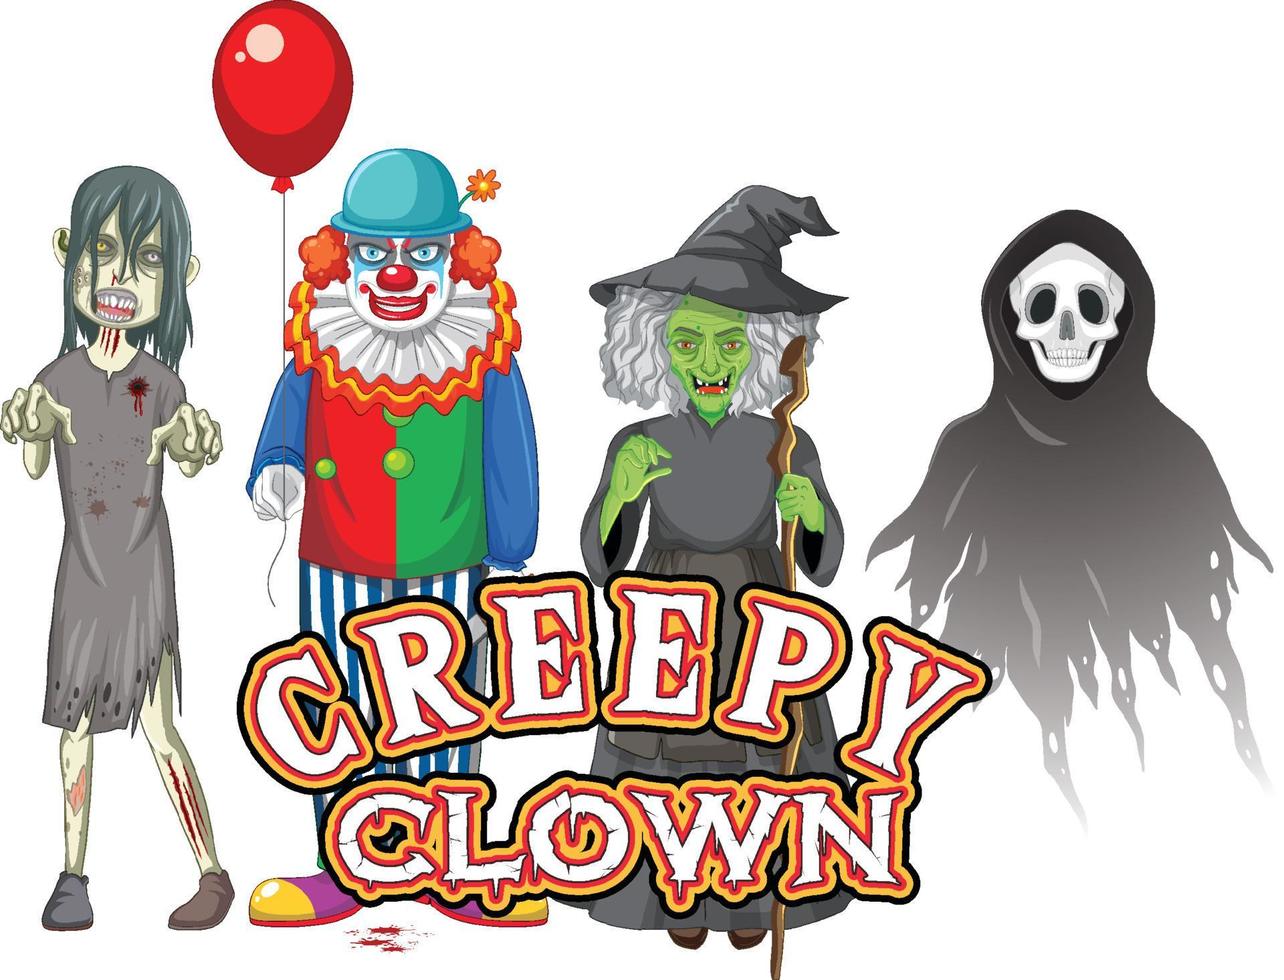 conception de texte de clown effrayant avec des personnages fantômes d'halloween vecteur